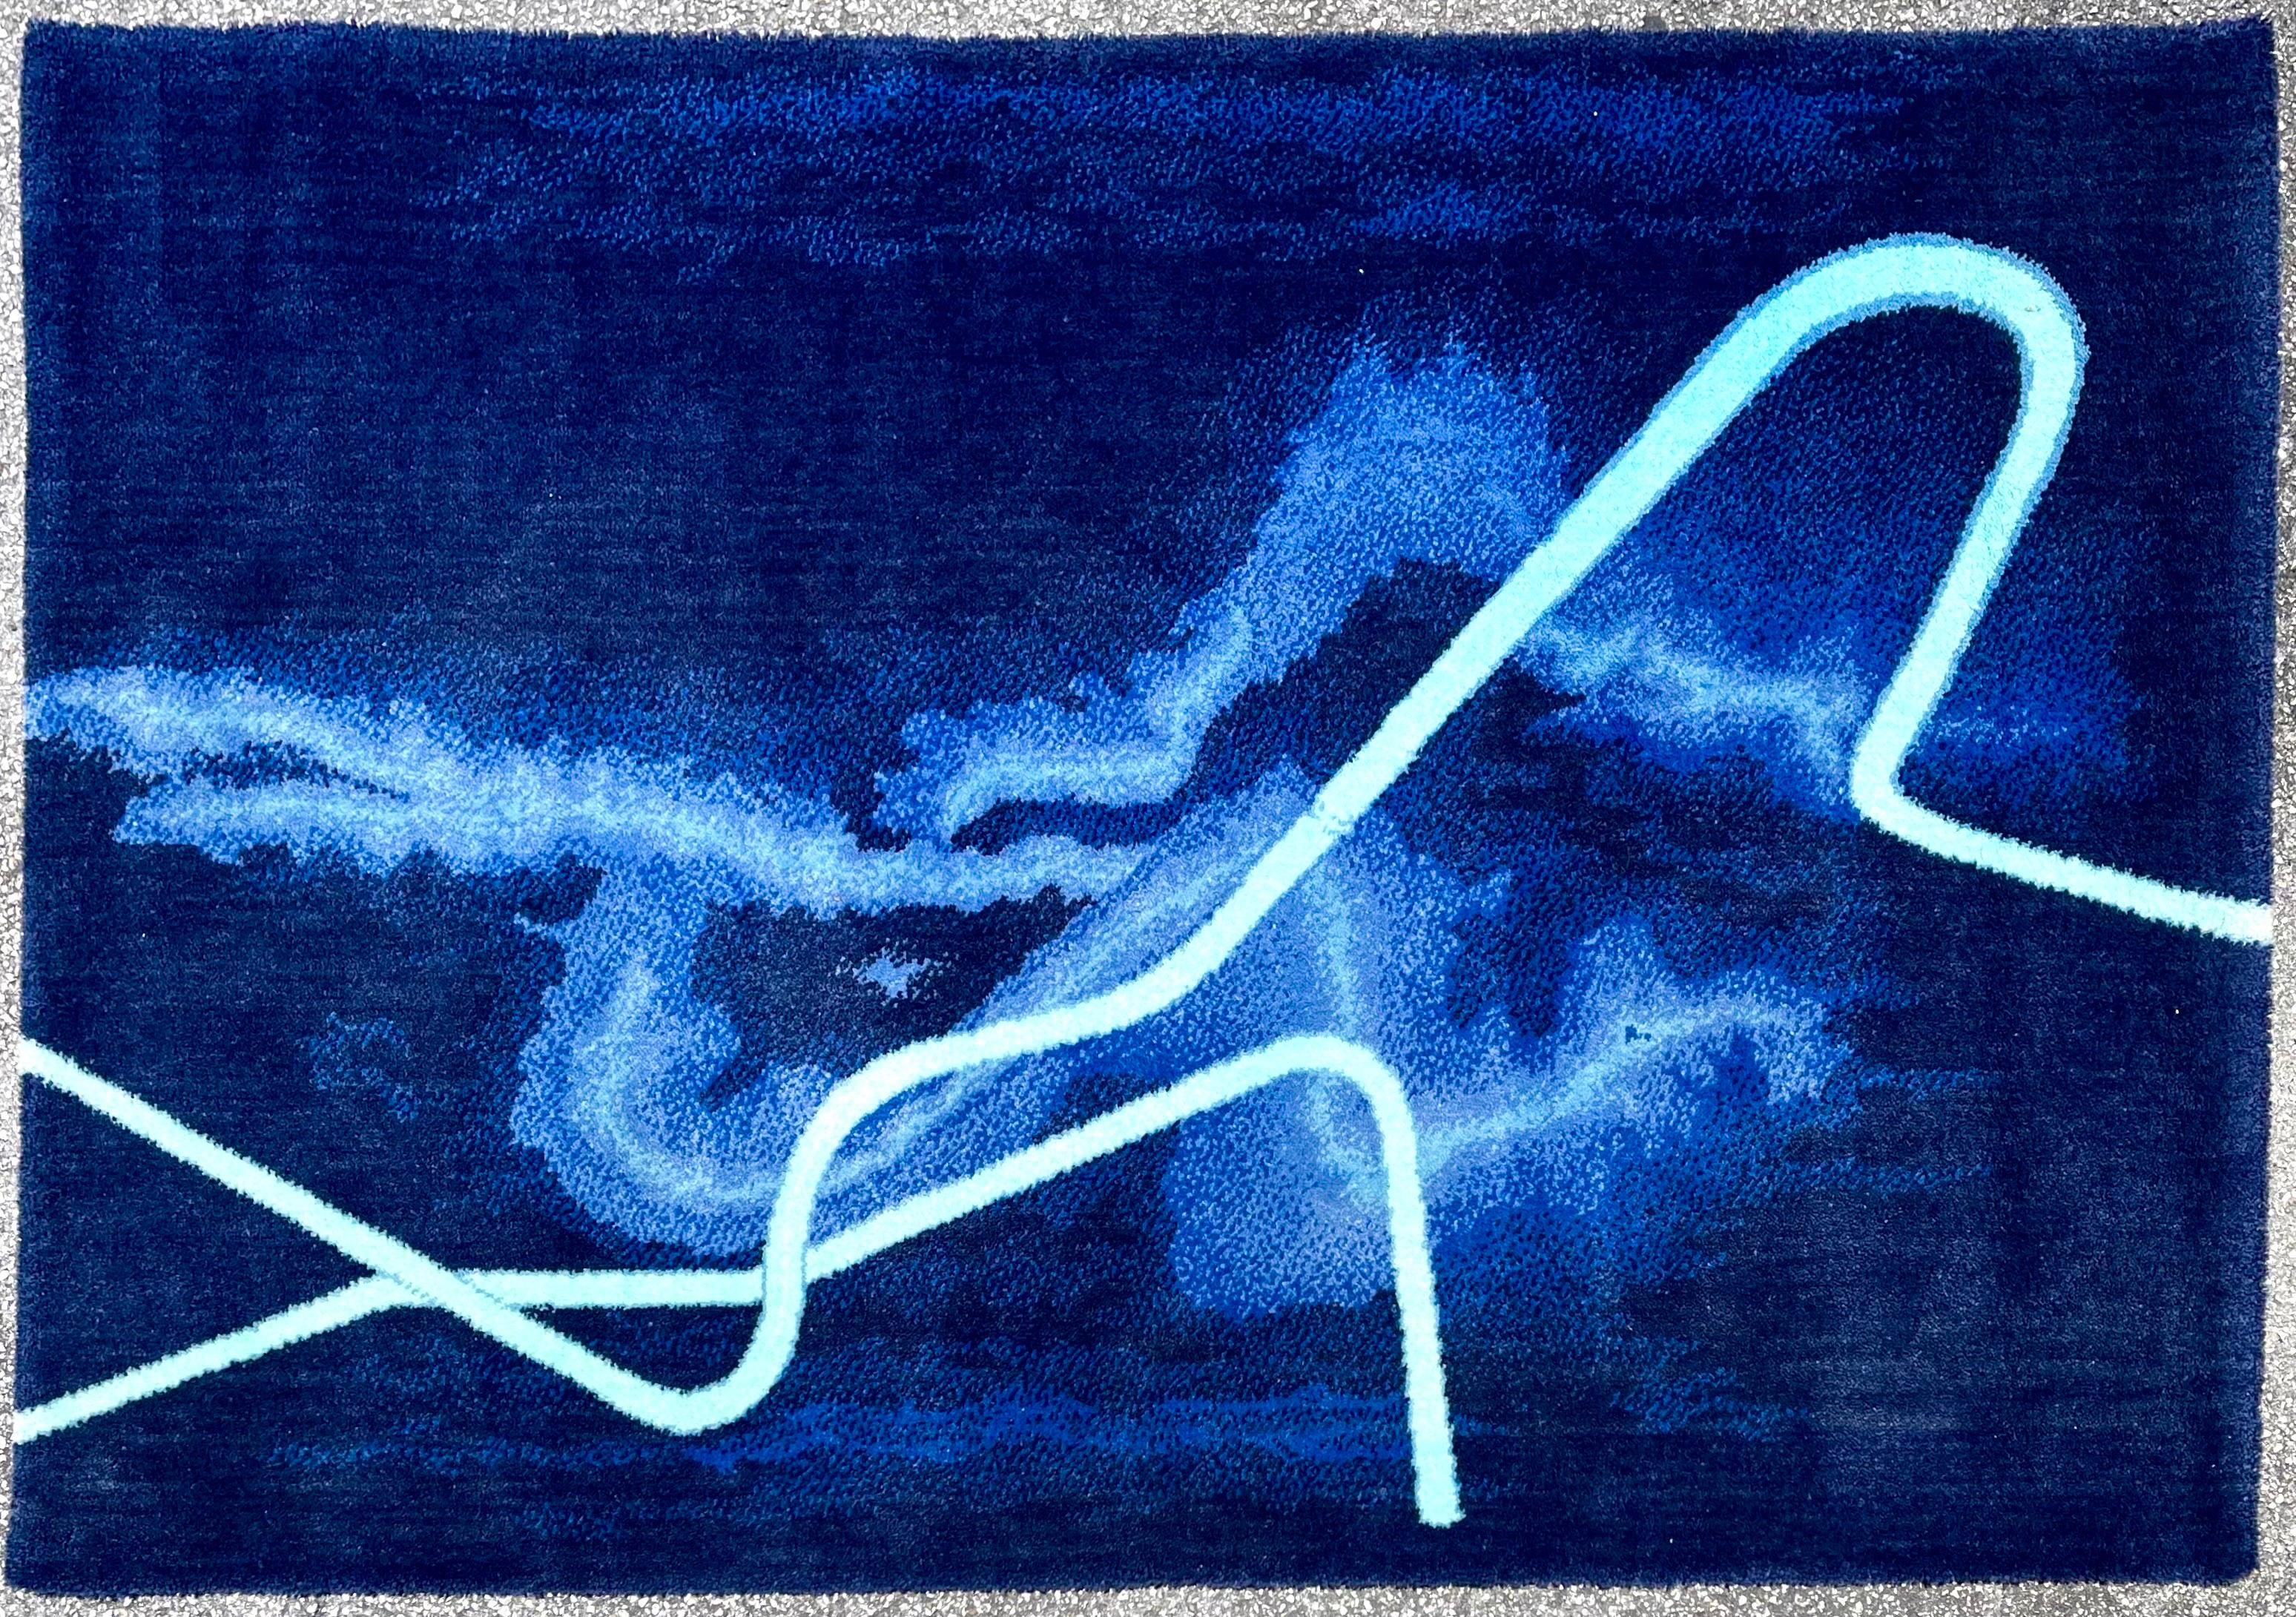 Gun Gordillo (Schwede, 1945-)
Ege Axminster, Dänemark. Dänischer Gobelinteppich Art-Line 
55" X 79" 
"Blue Hour" Rechteckiger Teppich aus getuftetem Leinen, blauer Meeresgrund, auf dem ein blauer, türkisfarbener Farbton liegt. Etiquette de l'éditeur